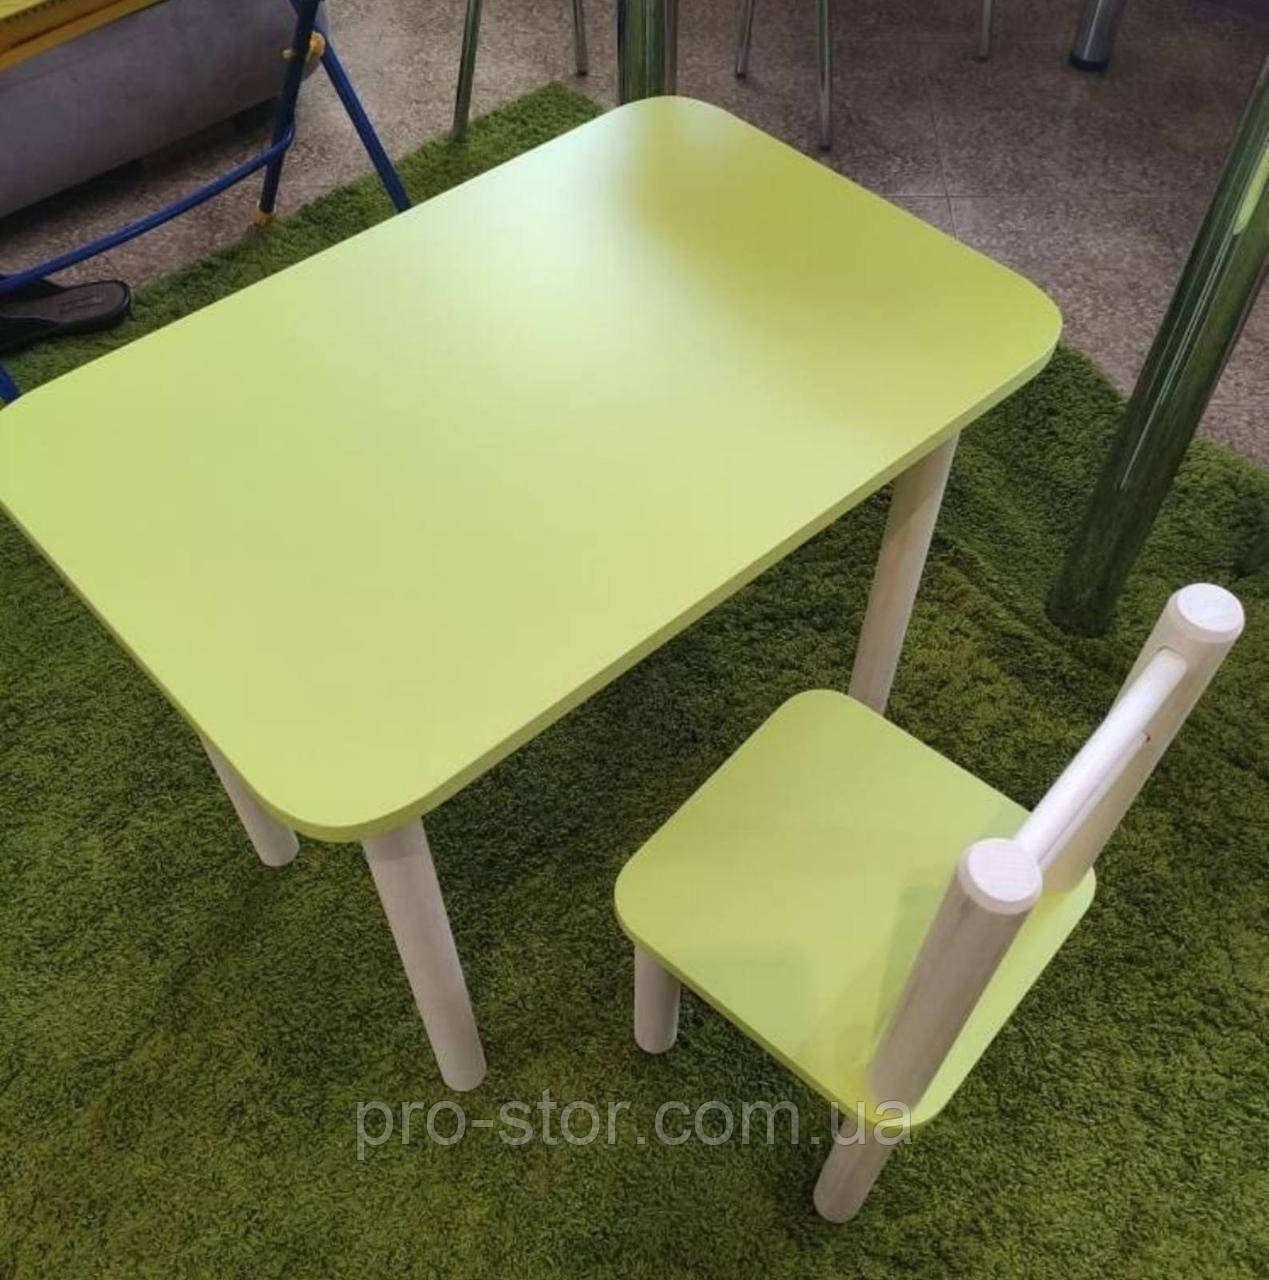 Дитячий столик і стільці дерева і ЛДСП від виробника стілець-стол стіл і стільці для дітей Лайм